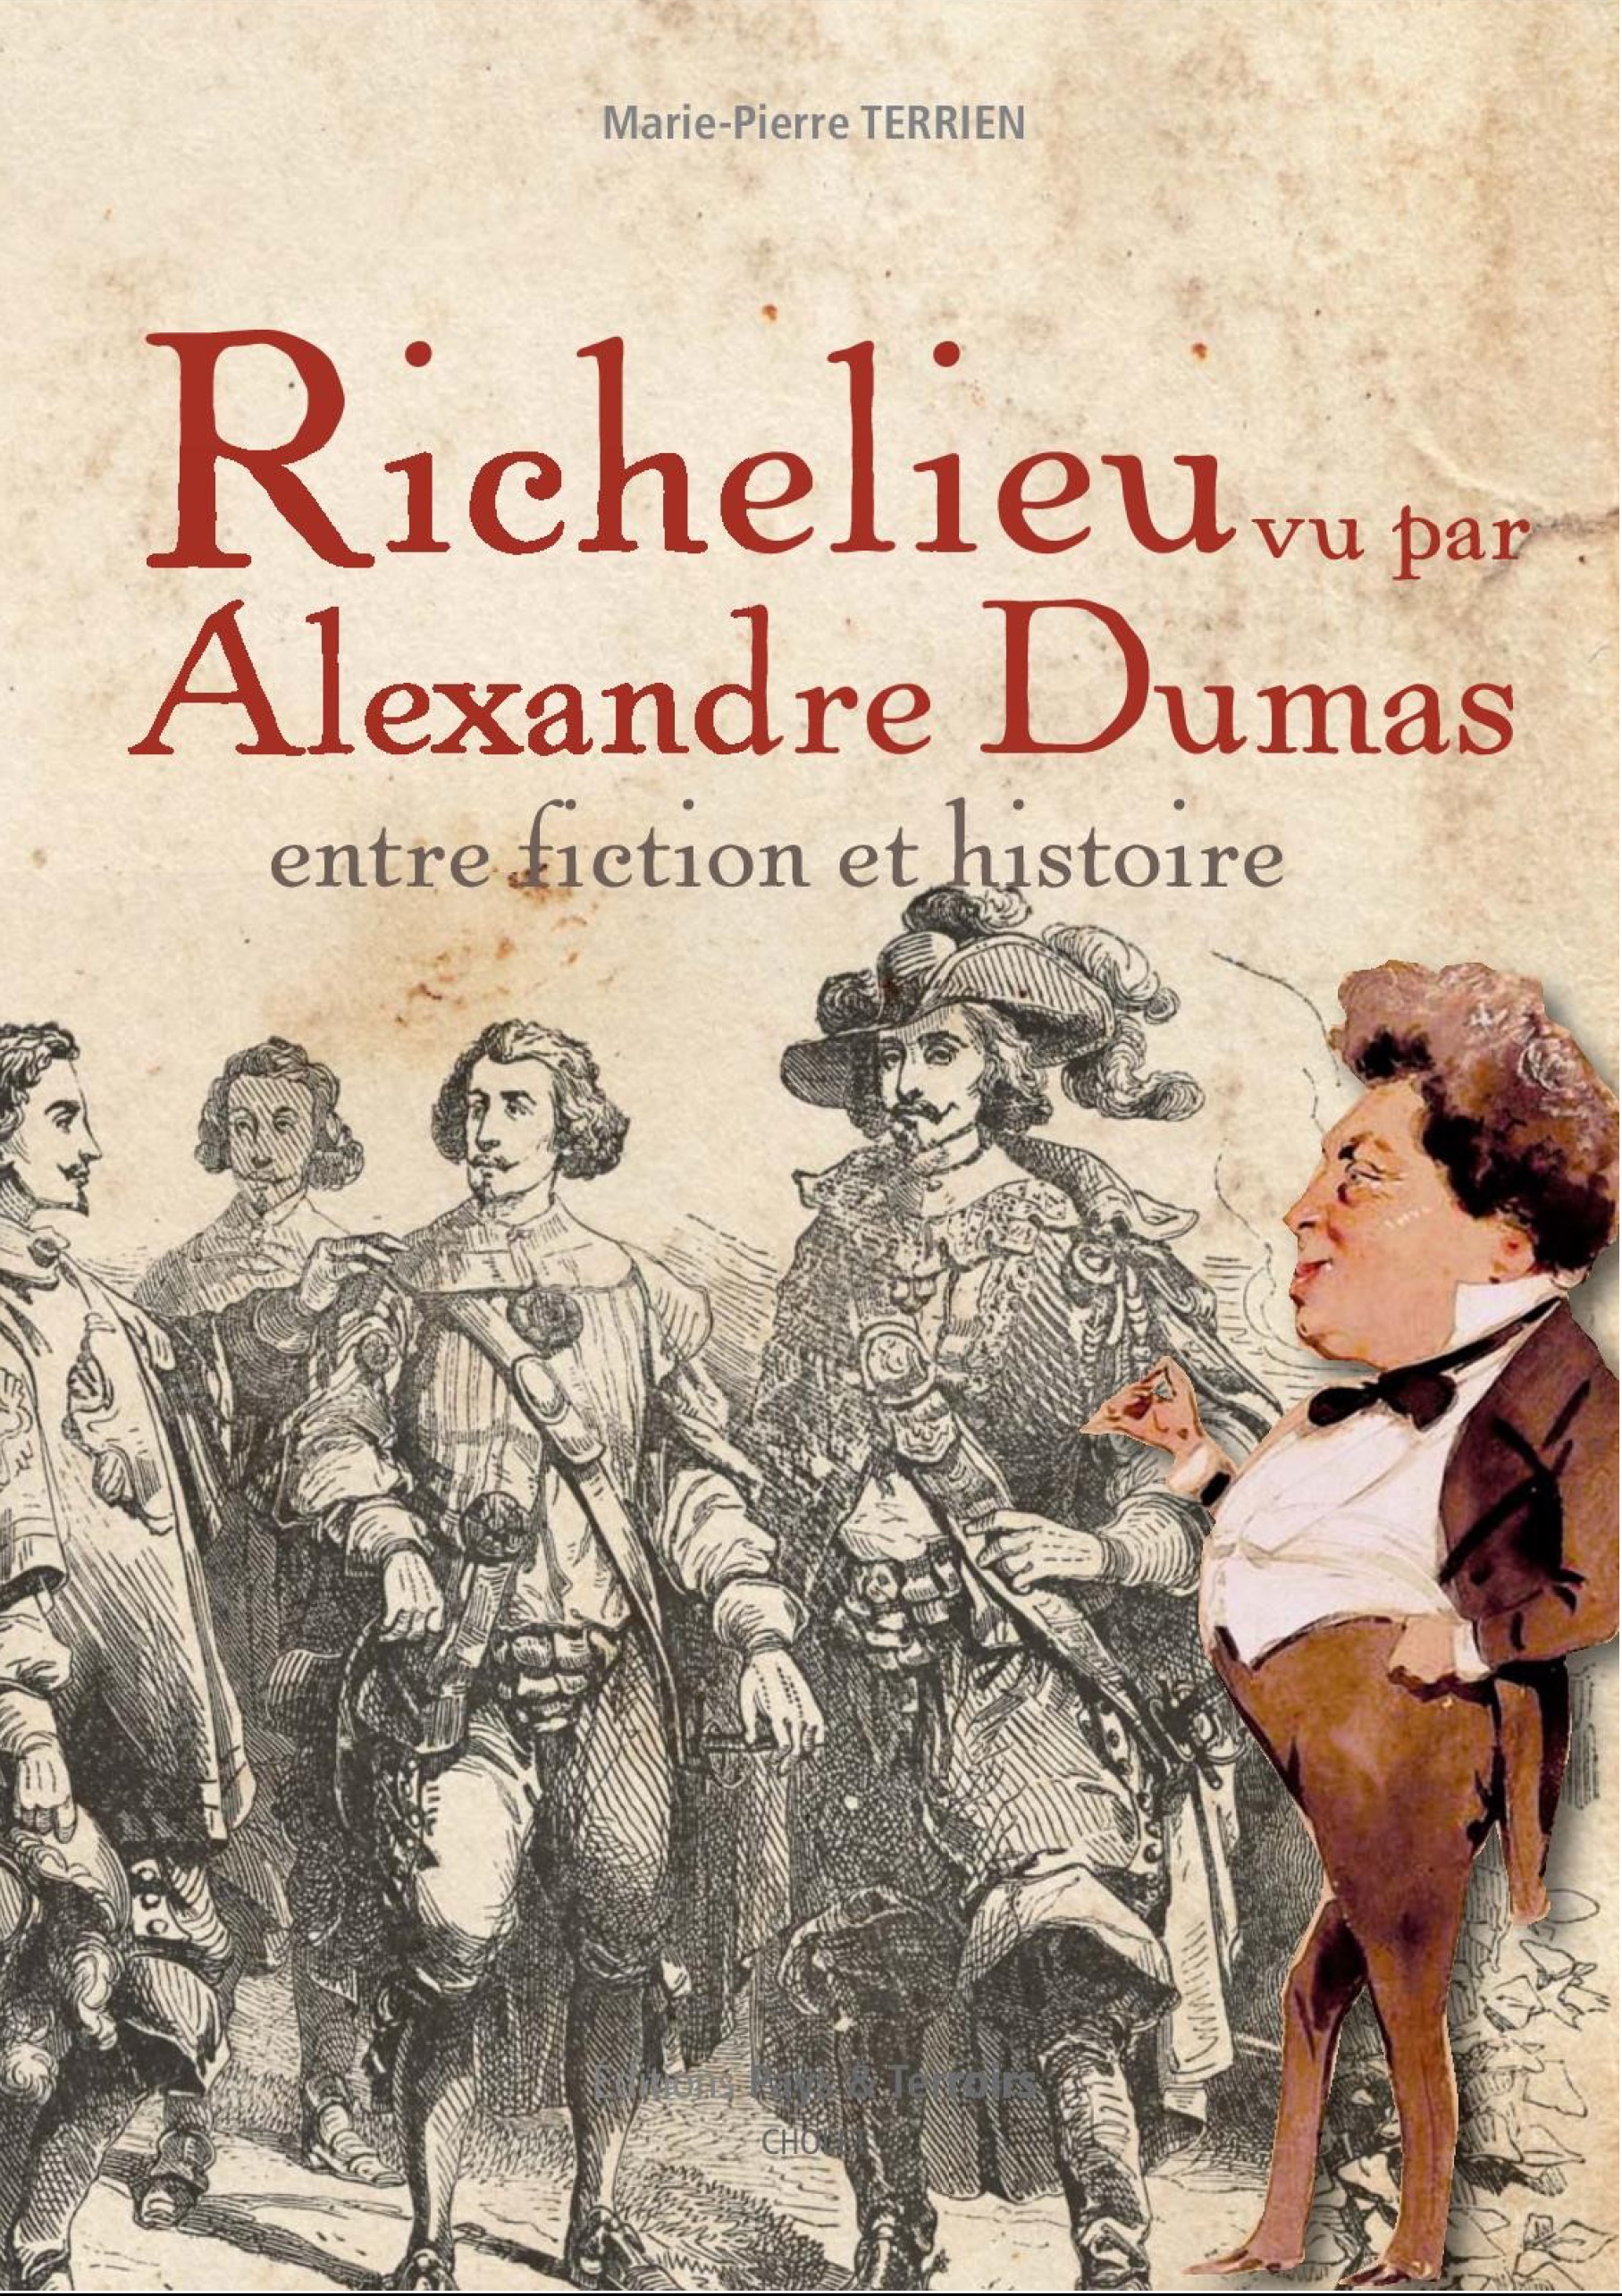 Richelieu vu par Alexandre Dumas – Marie-Pierre TERRIEN